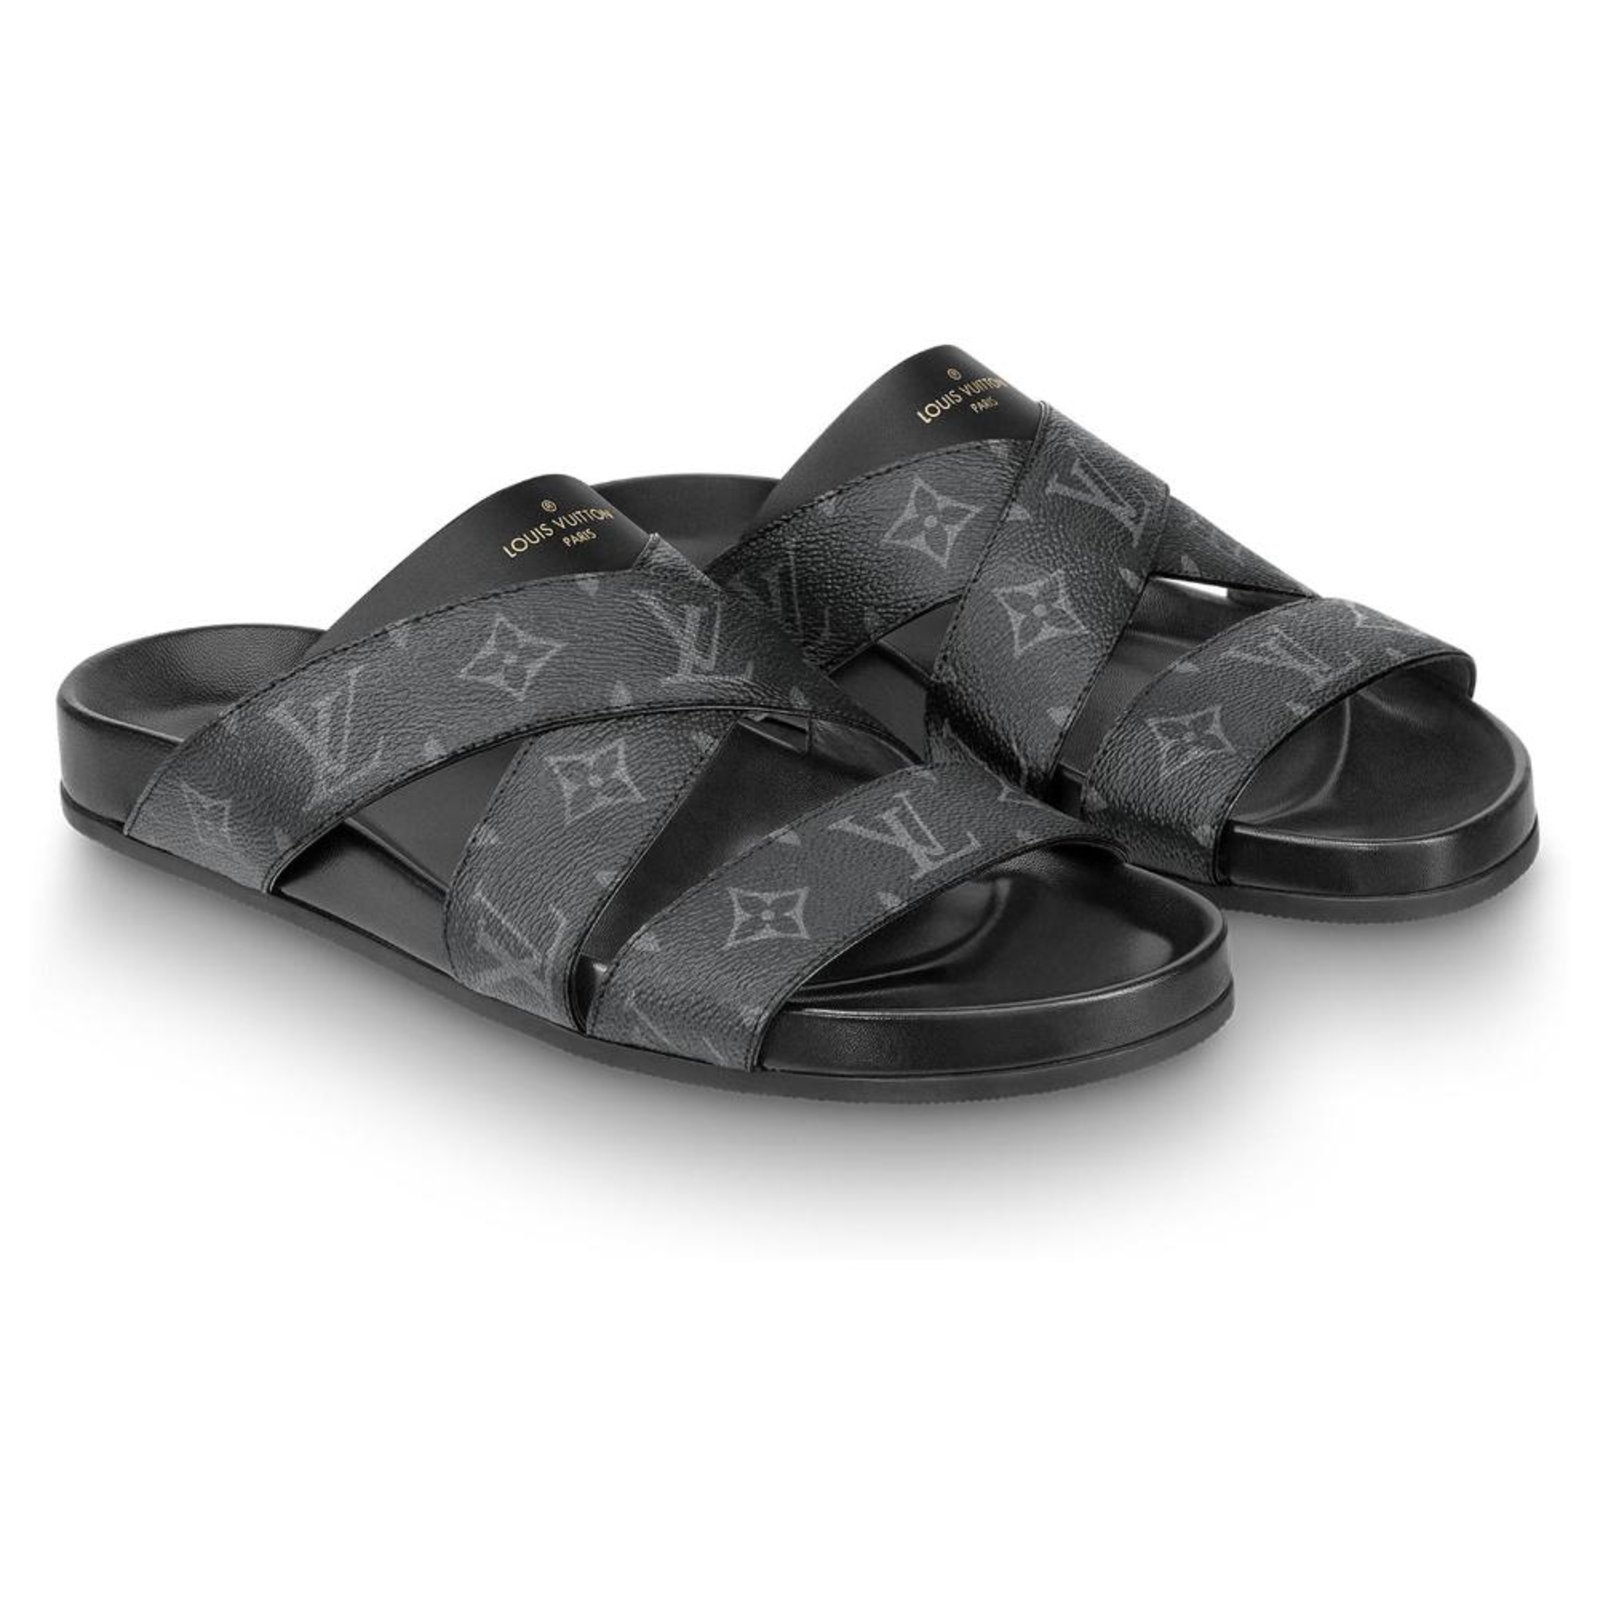 Louis Vuitton Men's Plain Leather Sandal